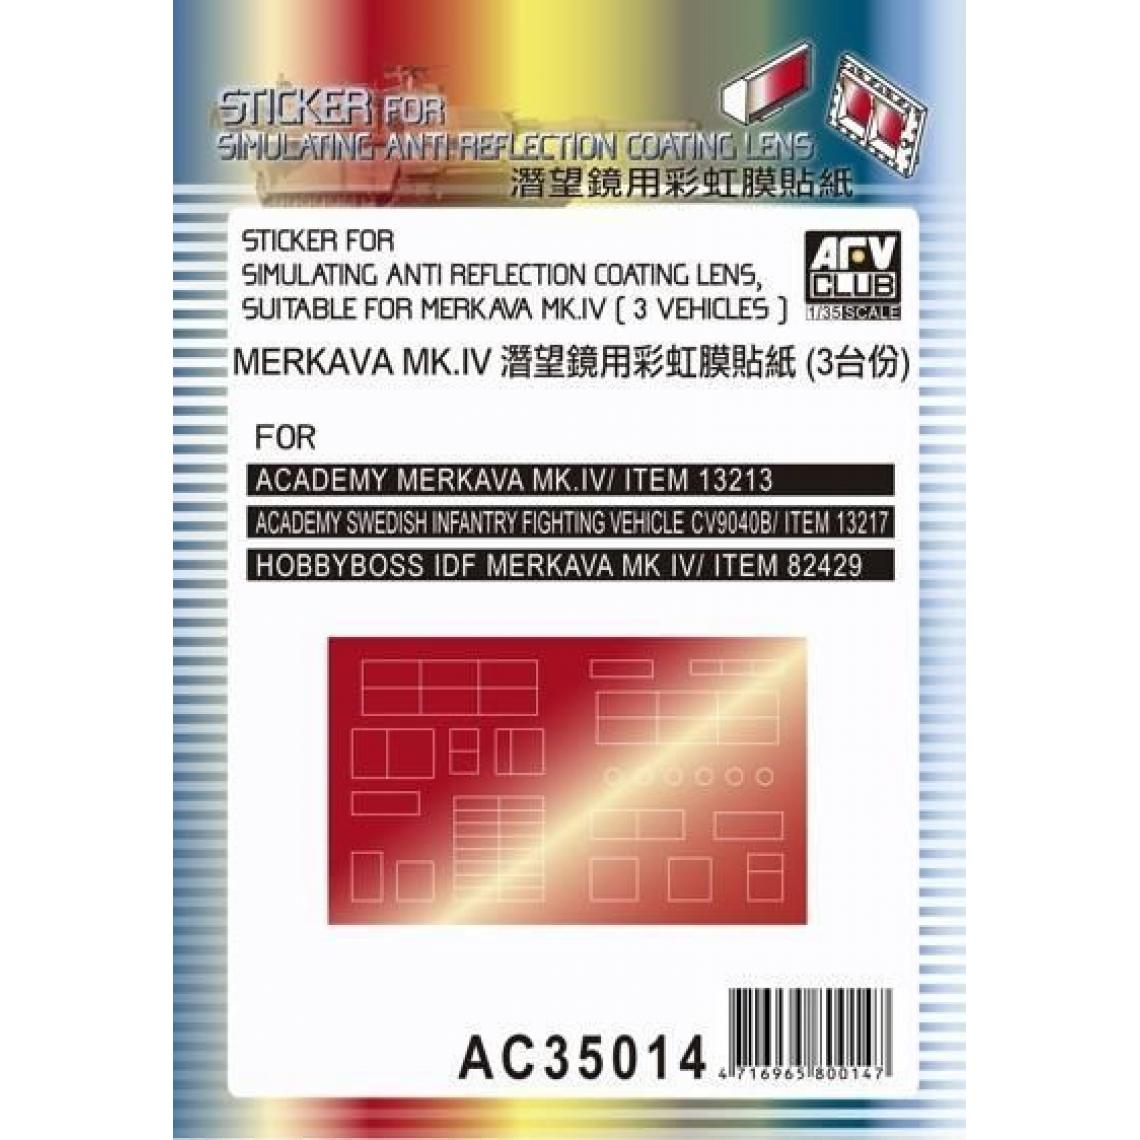 Afv Club - Sticker anti reflection for Merkava MkIV - 1:35e - AFV-Club - Accessoires et pièces